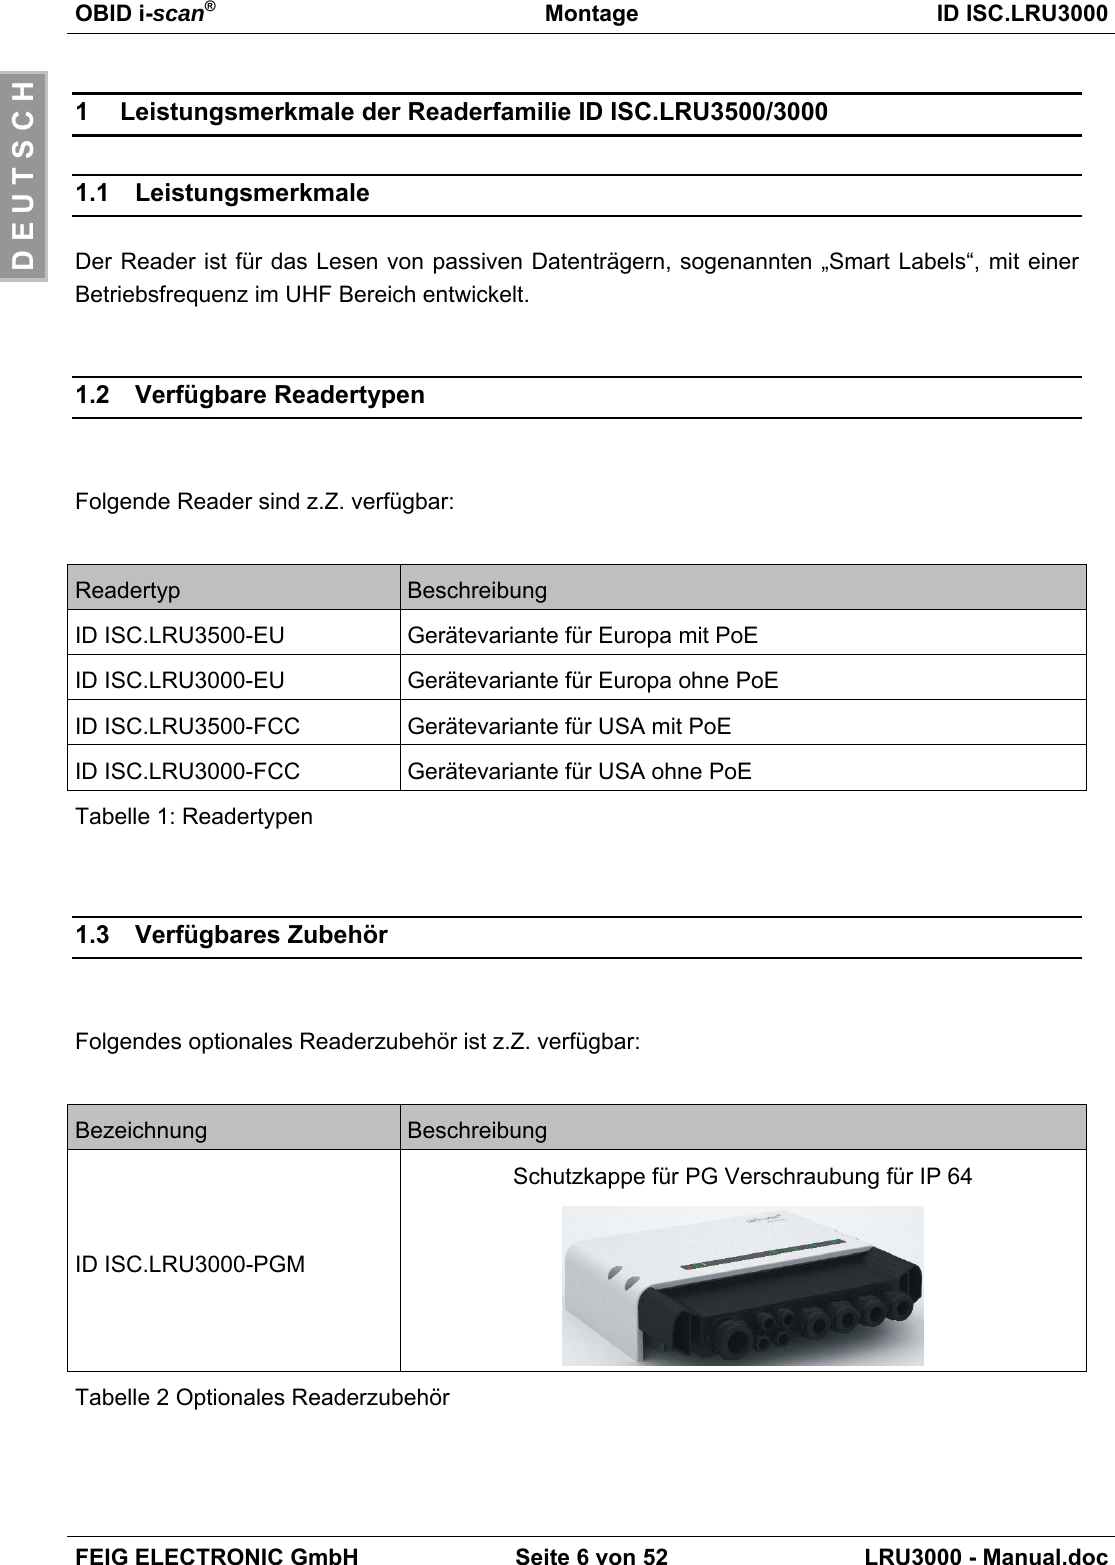 OBID i-scan®Montage ID ISC.LRU3000FEIG ELECTRONIC GmbH Seite 6 von 52 LRU3000 - Manual.docD E U T S C H1  Leistungsmerkmale der Readerfamilie ID ISC.LRU3500/30001.1 LeistungsmerkmaleDer Reader ist für das Lesen von passiven Datenträgern, sogenannten „Smart Labels“, mit einerBetriebsfrequenz im UHF Bereich entwickelt.1.2 Verfügbare ReadertypenFolgende Reader sind z.Z. verfügbar:Readertyp BeschreibungID ISC.LRU3500-EU Gerätevariante für Europa mit PoEID ISC.LRU3000-EU Gerätevariante für Europa ohne PoEID ISC.LRU3500-FCC Gerätevariante für USA mit PoEID ISC.LRU3000-FCC Gerätevariante für USA ohne PoETabelle 1: Readertypen1.3 Verfügbares ZubehörFolgendes optionales Readerzubehör ist z.Z. verfügbar:Bezeichnung BeschreibungID ISC.LRU3000-PGMSchutzkappe für PG Verschraubung für IP 64Tabelle 2 Optionales Readerzubehör